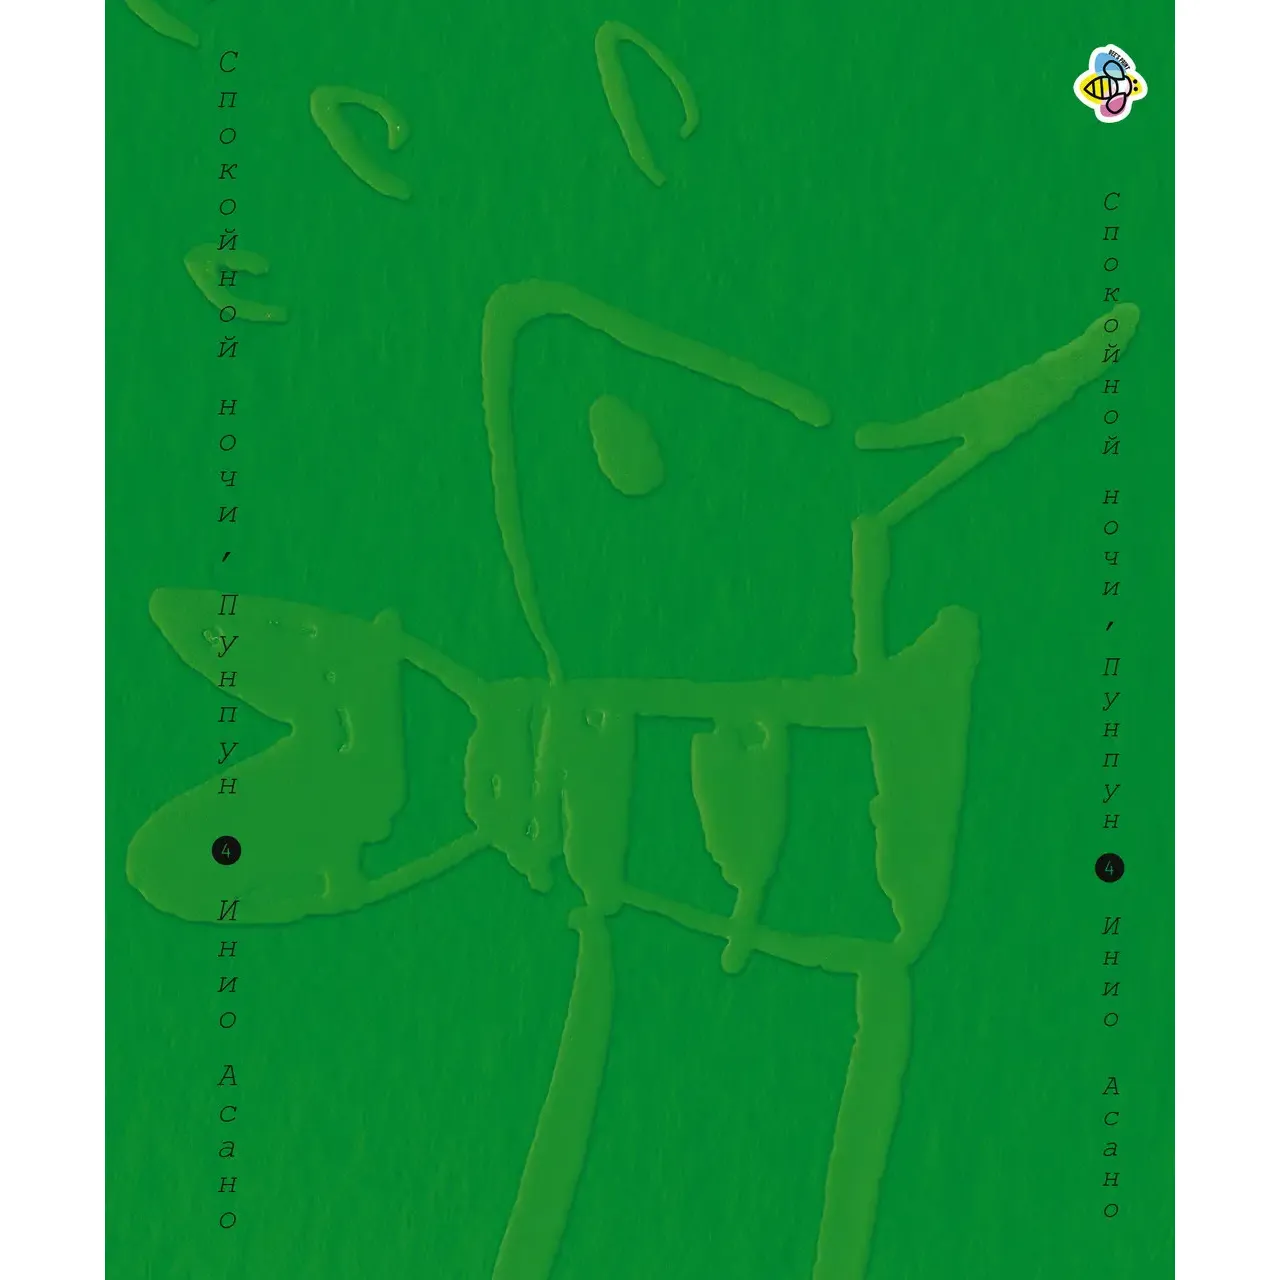 Комплект манги Bee's Print Goodnight Punpun Спокойной ночи Пунпун Том с 1-13 BP DN PP SET 01 (1698828557.0) - фото 5